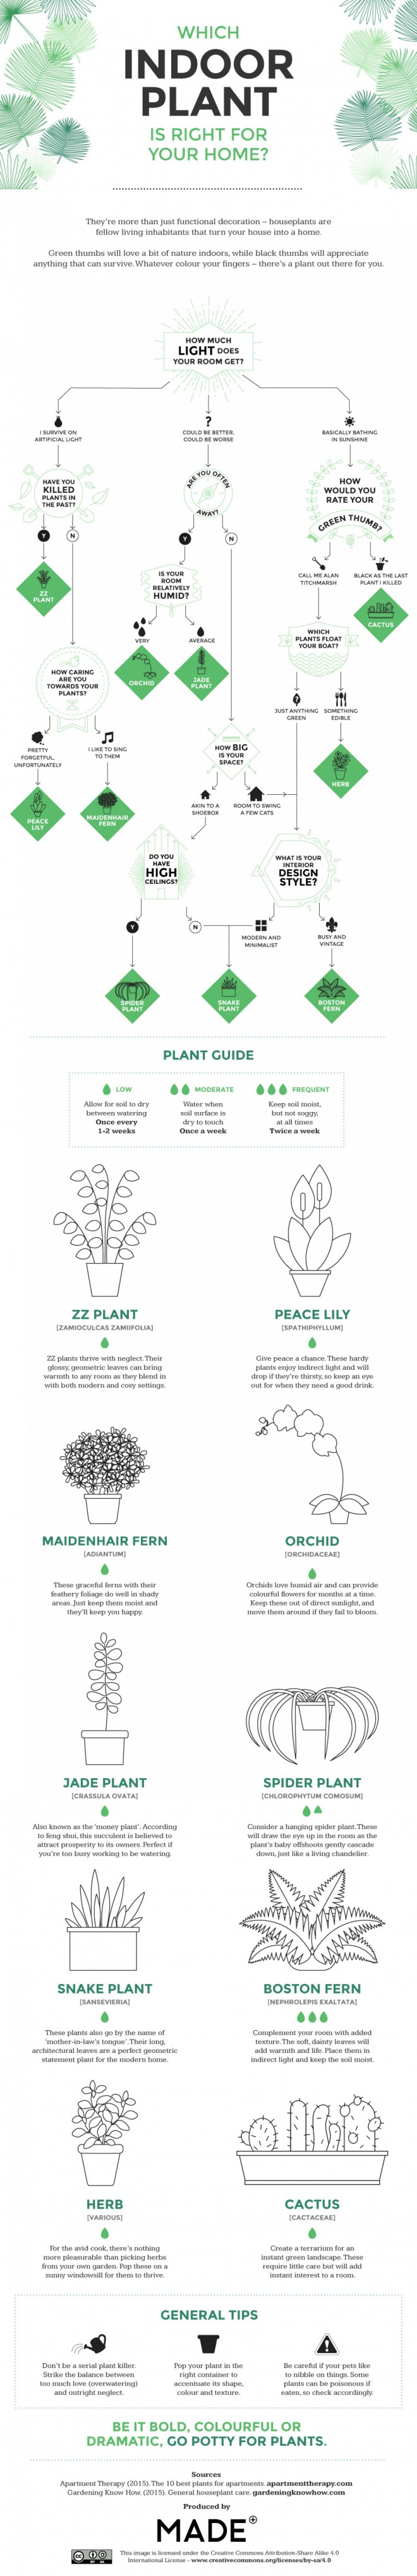 Katera sobna rastlina je prava izbira za vaš prostor?